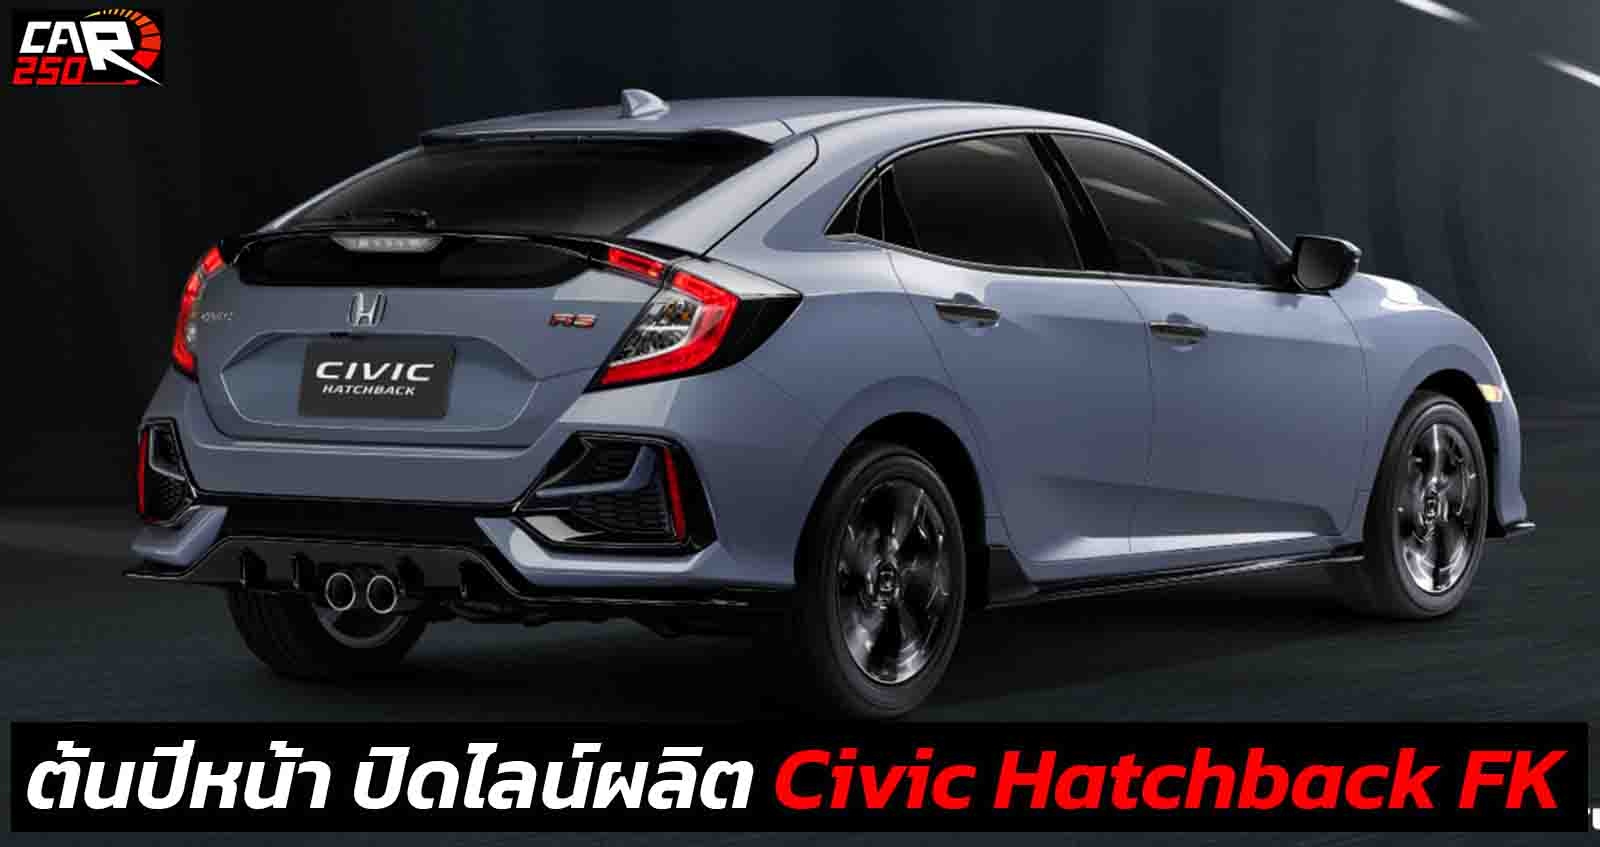 ต้นปีหน้า ปิดไลน์ผลิต Honda Civic Hatchback FK ตัวใหม่ FL ไม่ขายไทย เหตุไม่คุ้มทุน